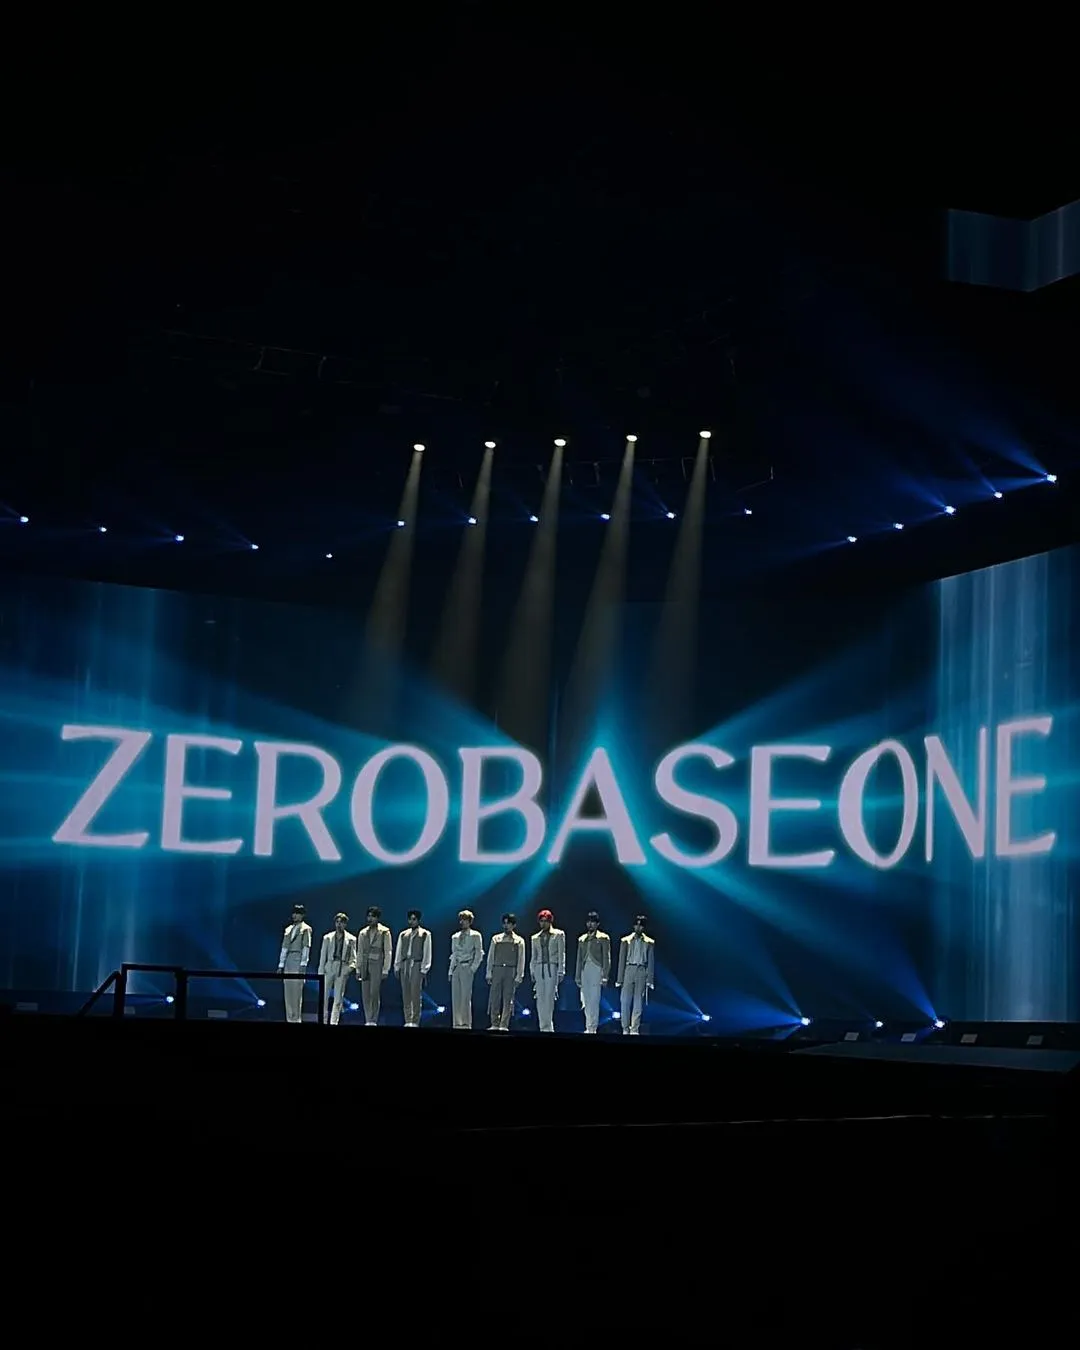 ZEROBASEONEによる第3世代の人気曲のカバーが話題に！グループのパフォーマンスが称賛される